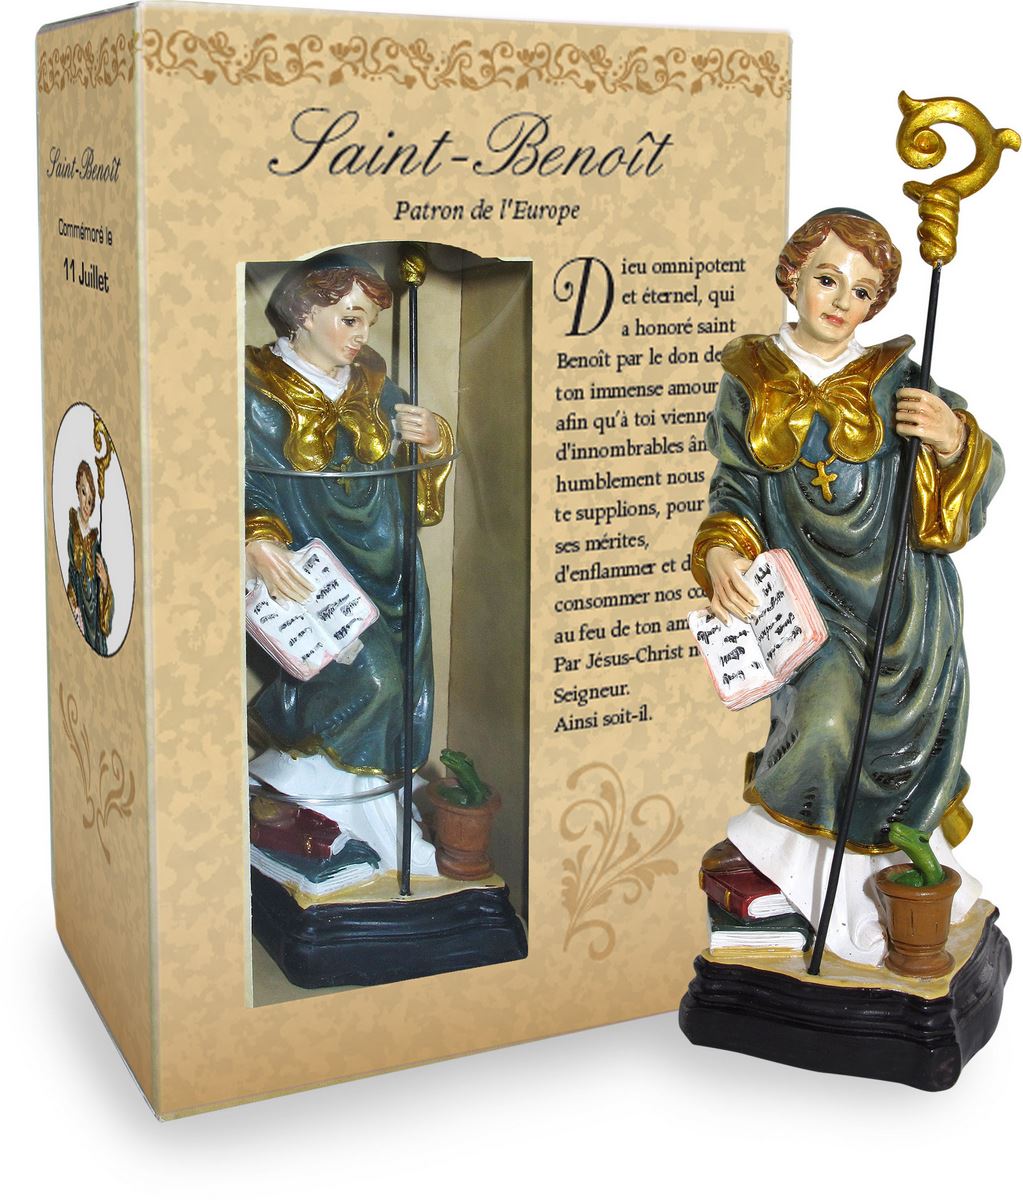 ferrari & arrighetti statua di san benedetto da 12 cm in confezione regalo con segnalibro, statuetta personaggio religioso con scatola regalo decorativa, testi in francese